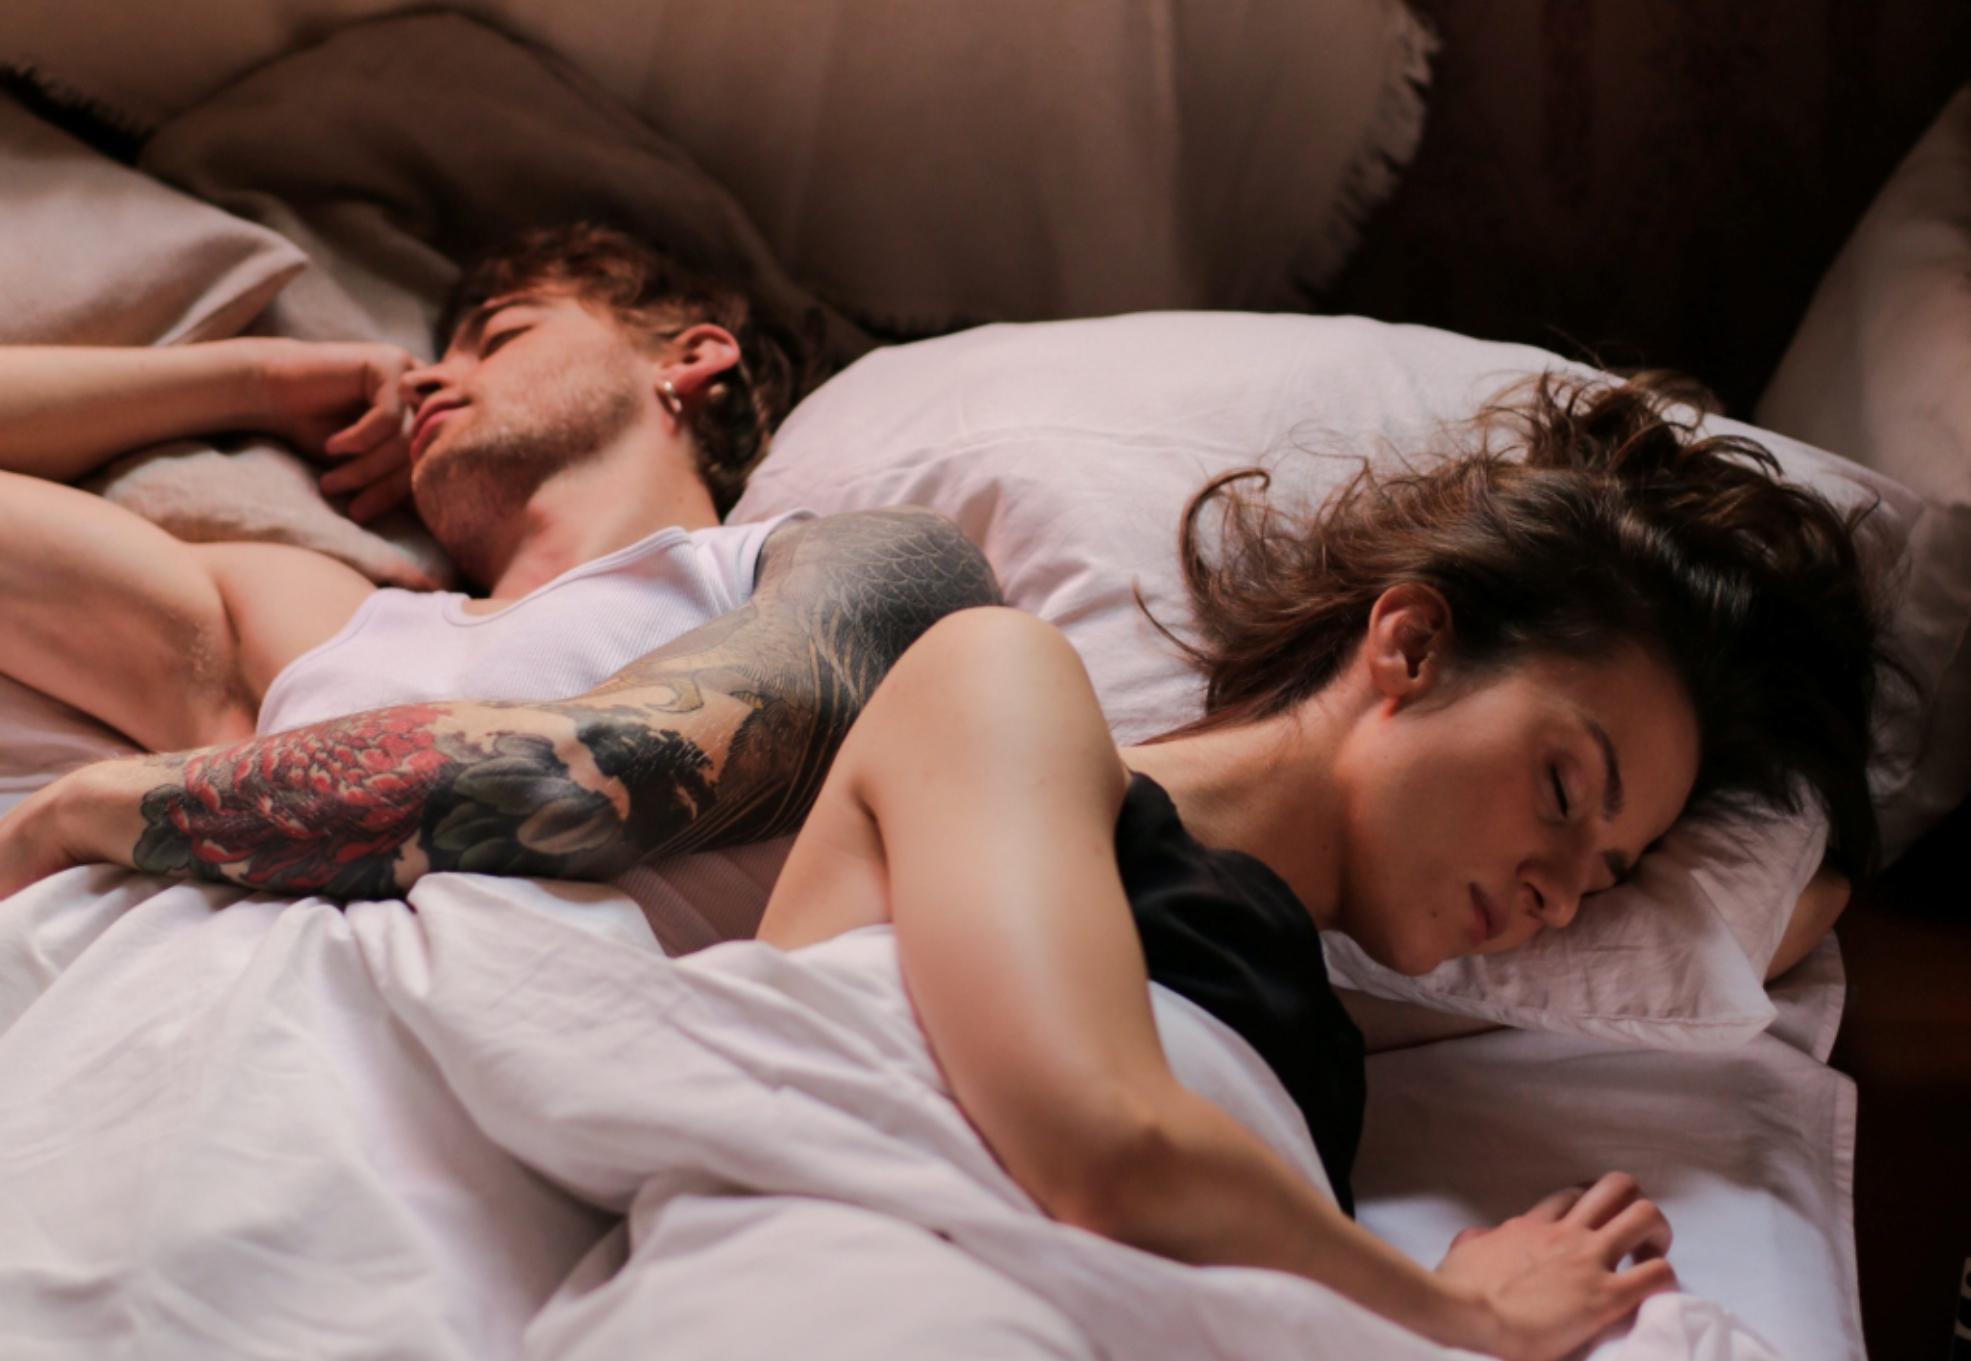 Ύπνος: Πώς να κοιμηθείτε καλύτερα όταν έχει καύσωνα χωρίς κλιματιστικό